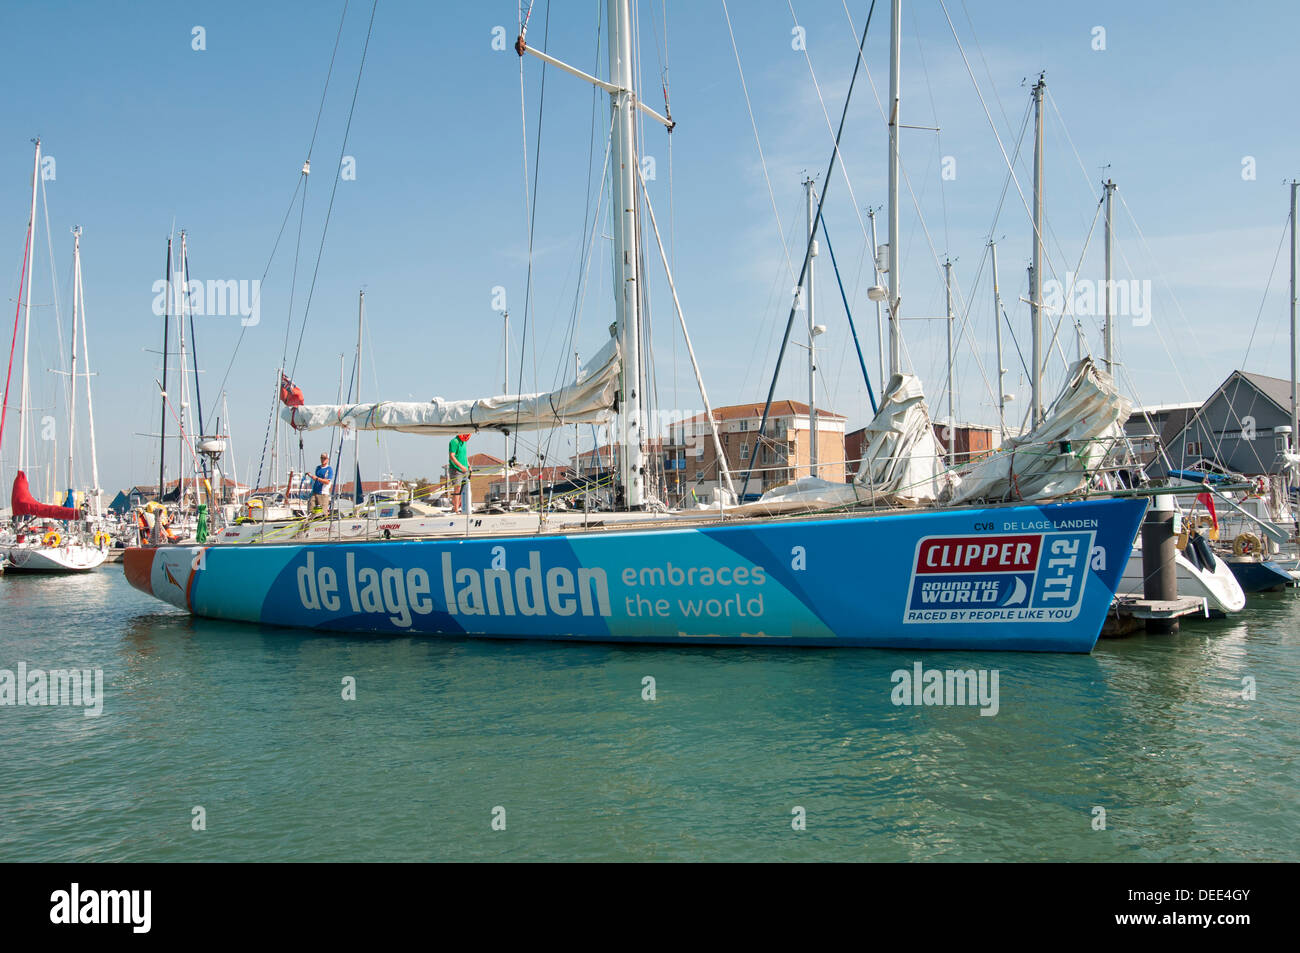 De Lage Landen parrainé clipper round the world yacht à la location ou à Cowes Banque D'Images